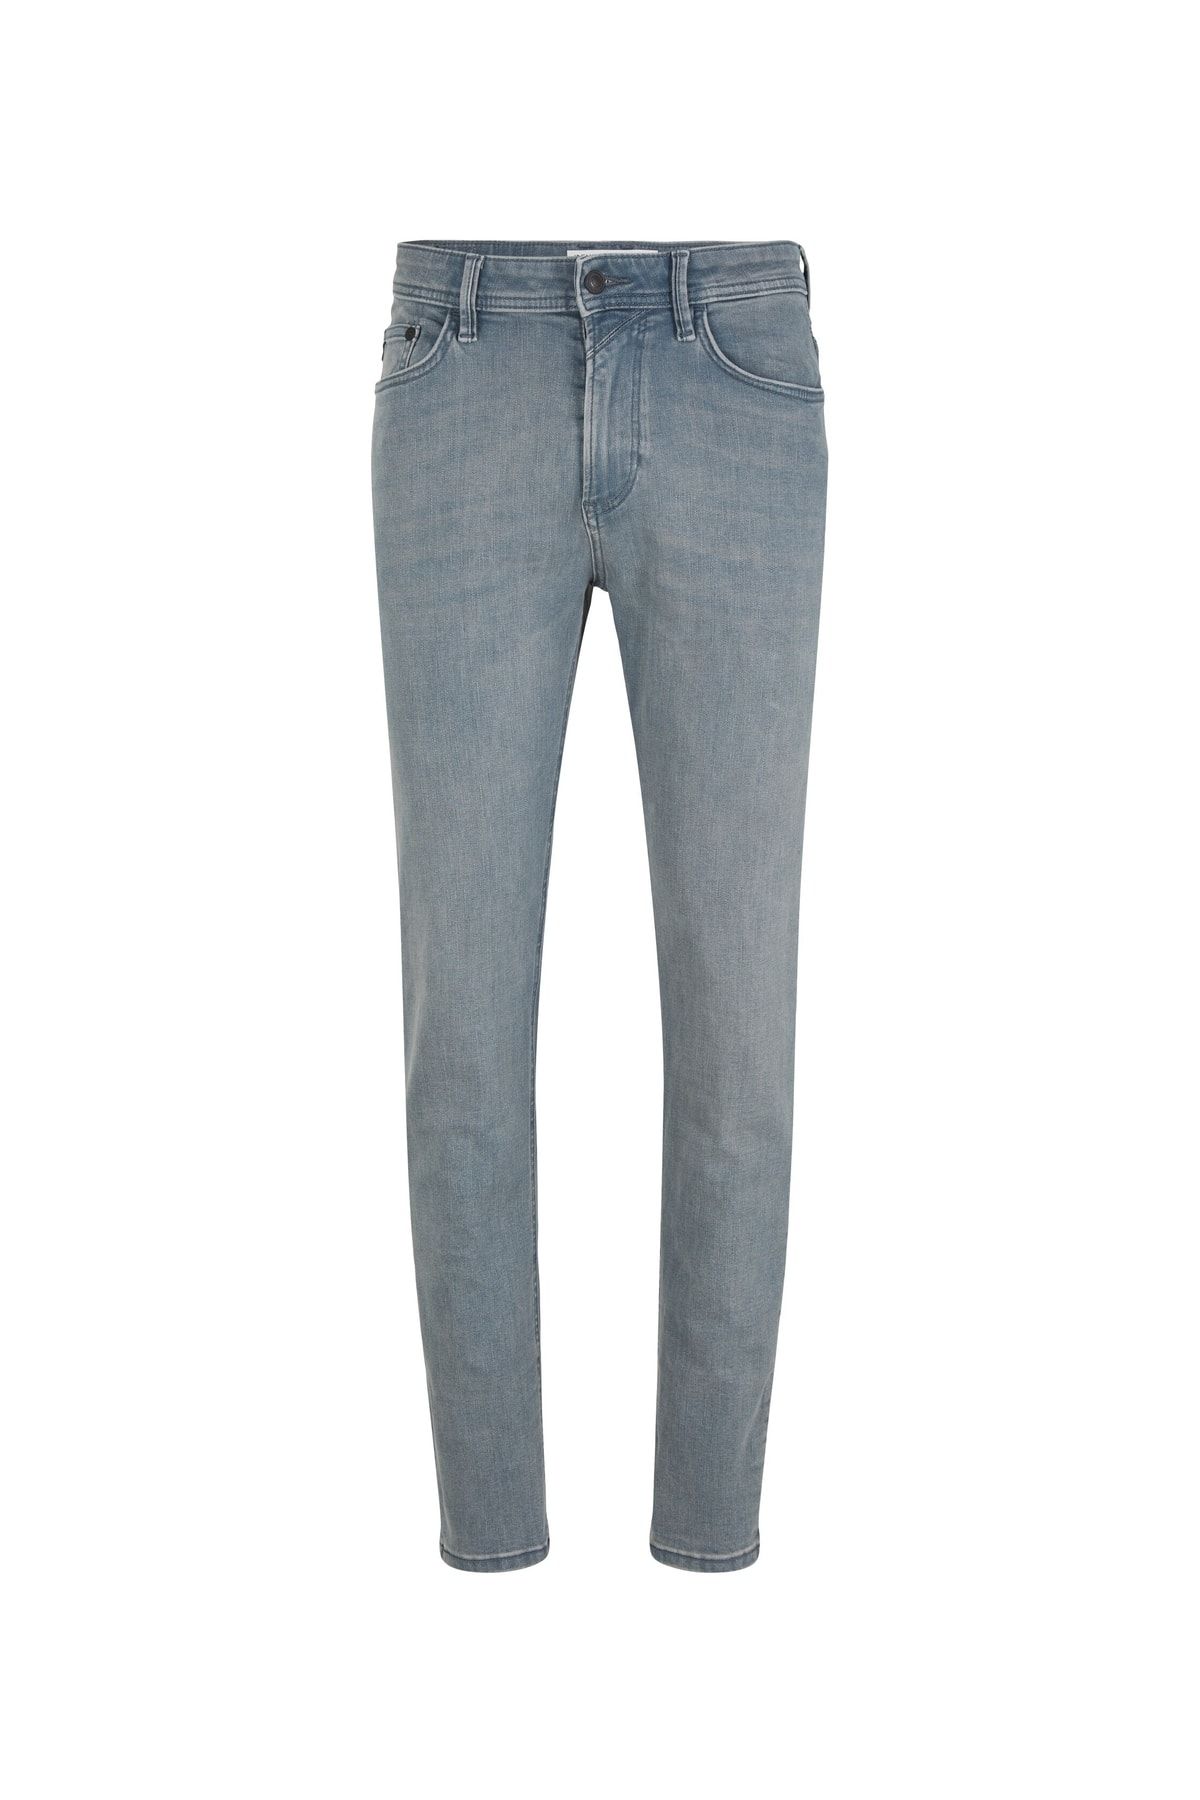 Buy TOM TAILOR Denim Men's Jeans Online at desertcartINDIA